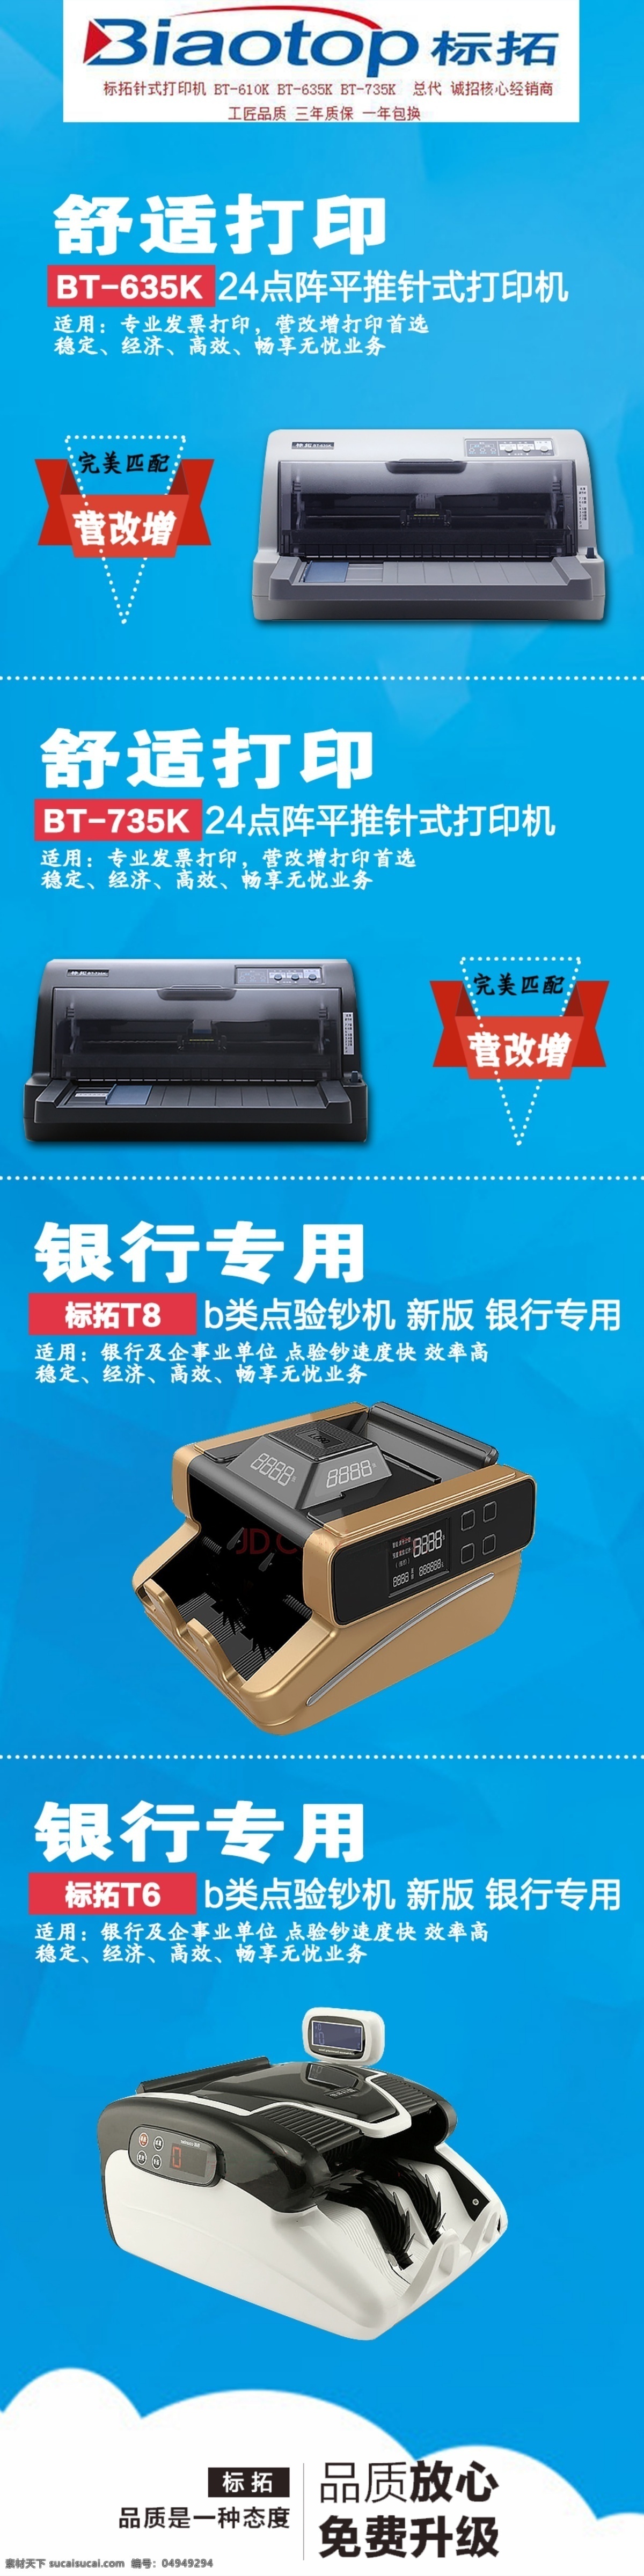 打印机 点钞机 标拓 产品展示 产品宣传 品质 种 态度 公司产品展示 蓝色